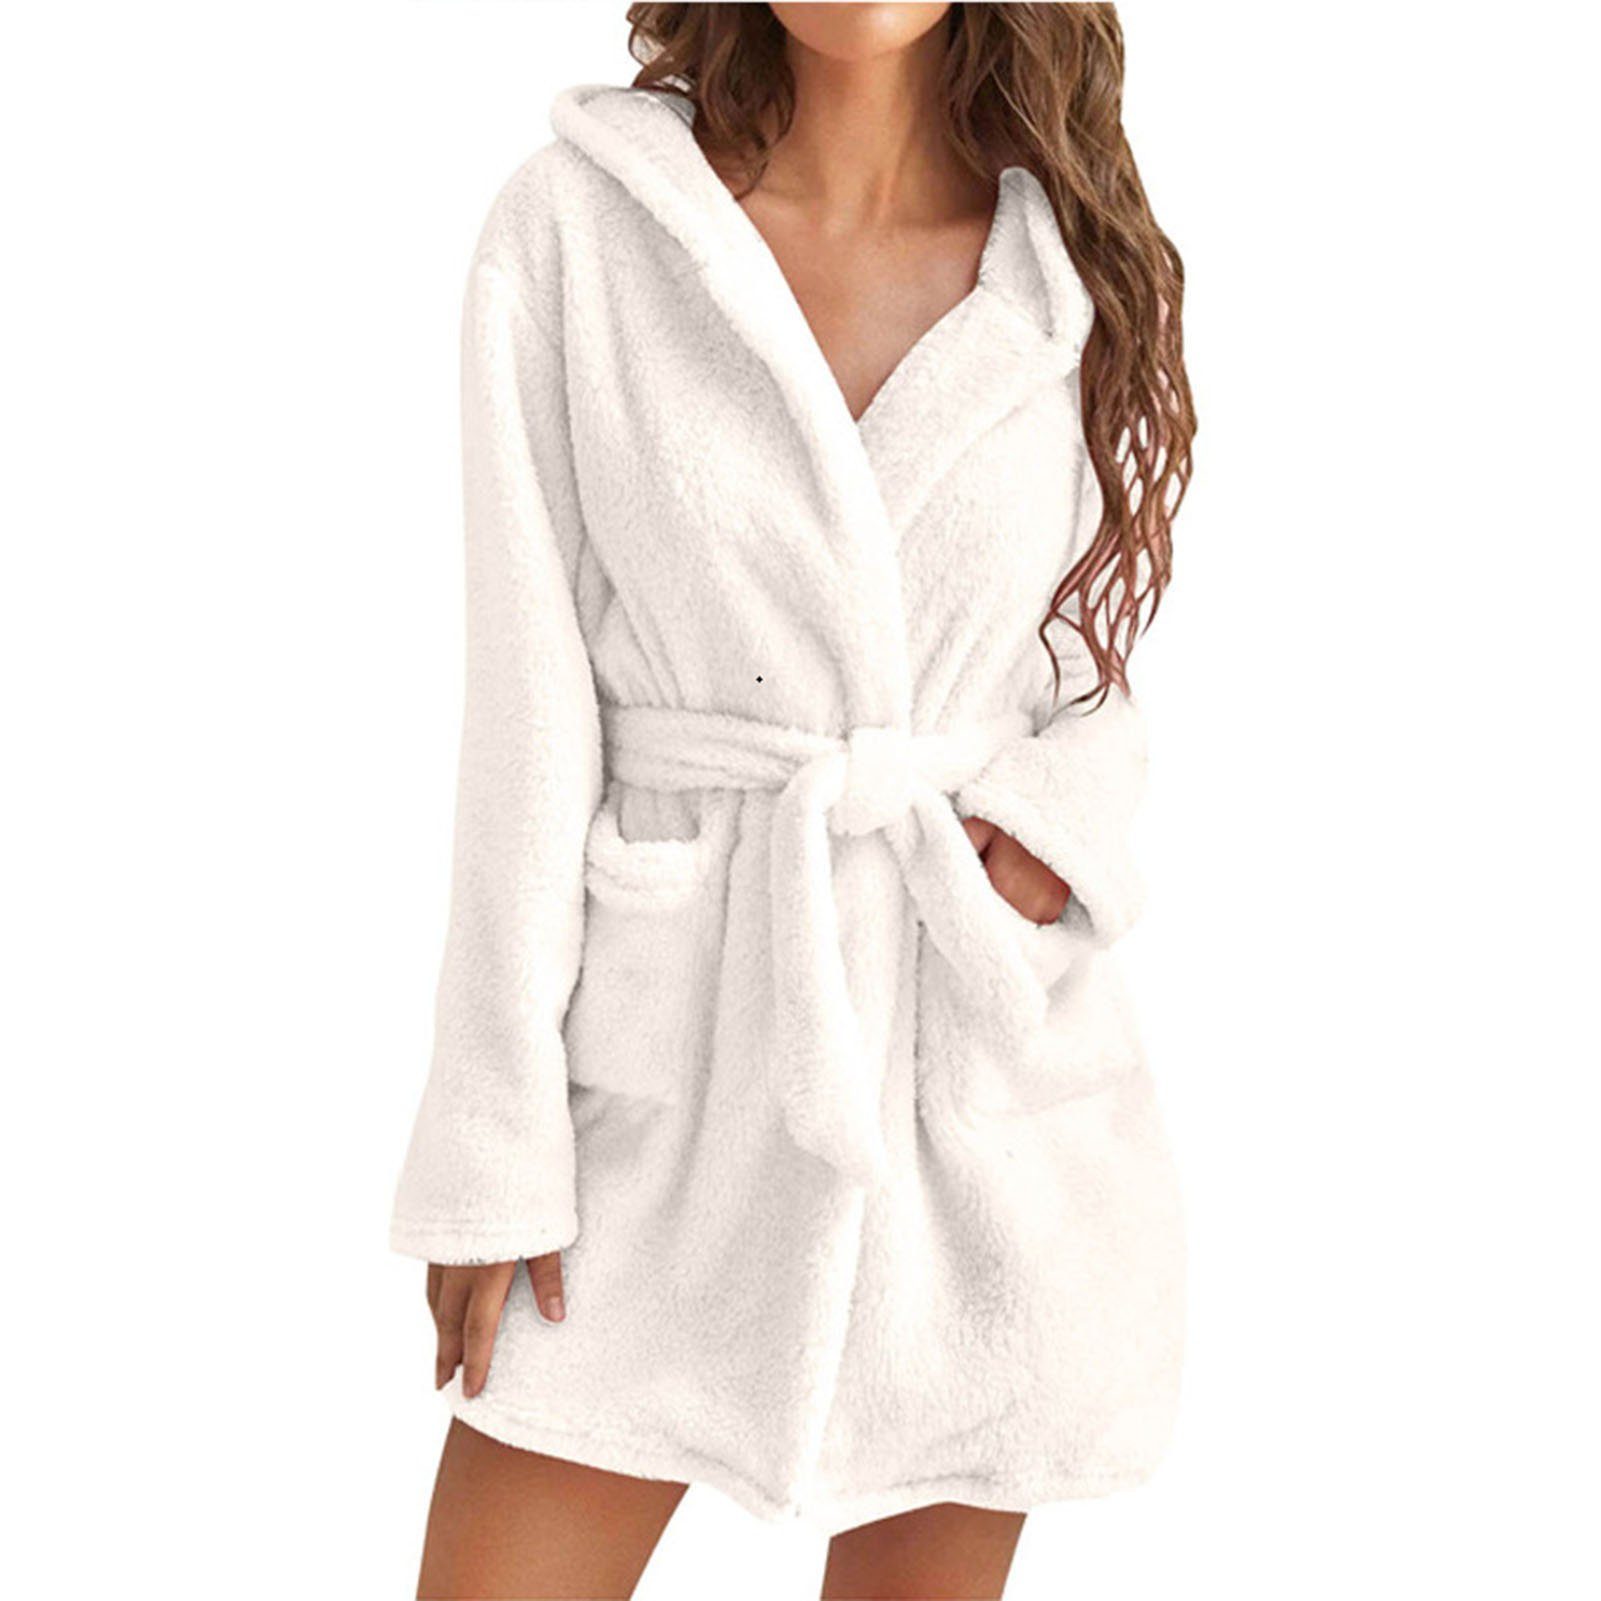 white Blusmart Für Damen-Handtuch-Bademantel Taschen, Atmungsaktiv, Bequem, 2 Mit Damenbademantel